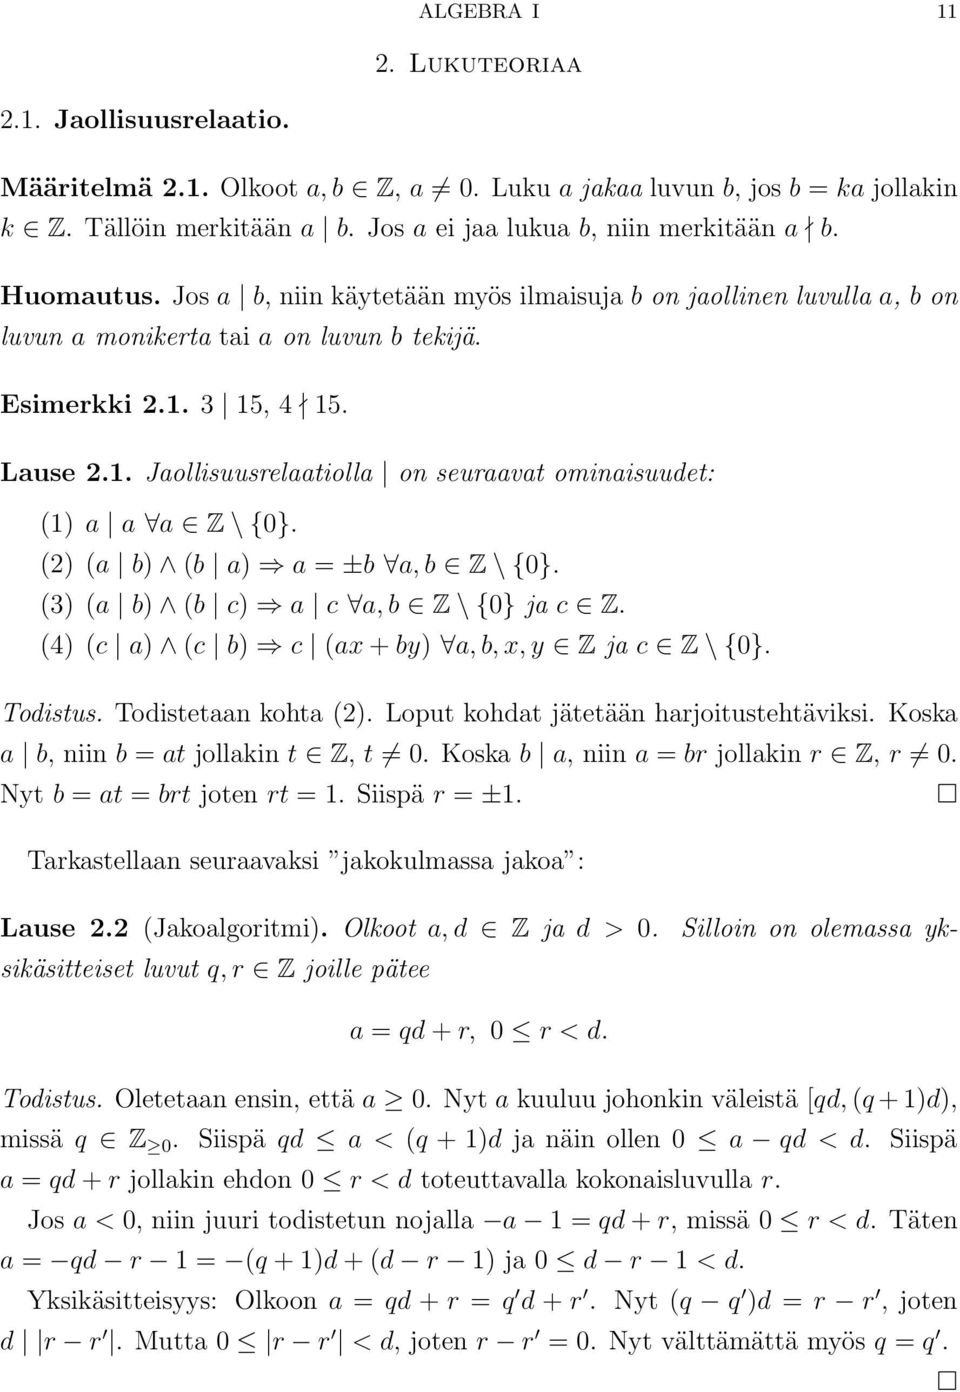 3 15, 4 15. Lause 2.1. Jaollisuusrelaatiolla on seuraavat ominaisuudet: (1) a a a Z \{0}. (2) (a b) (b a) a = ±b a, b Z \{0}. (3) (a b) (b c) a c a, b Z \{0} ja c Z.